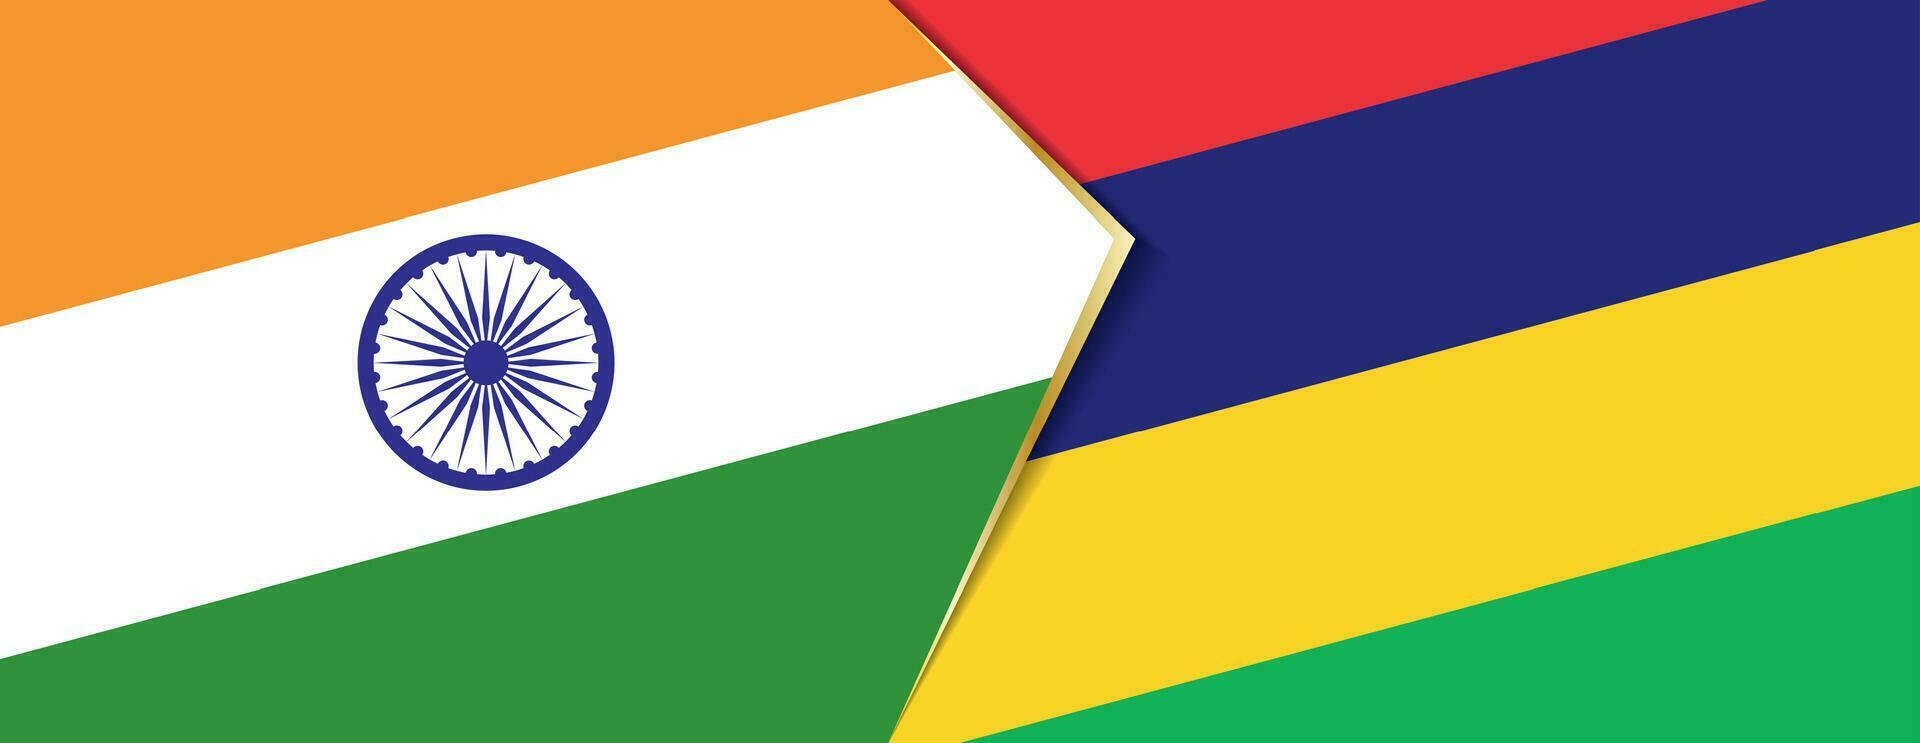 Inde et maurice drapeaux, deux vecteur drapeaux.